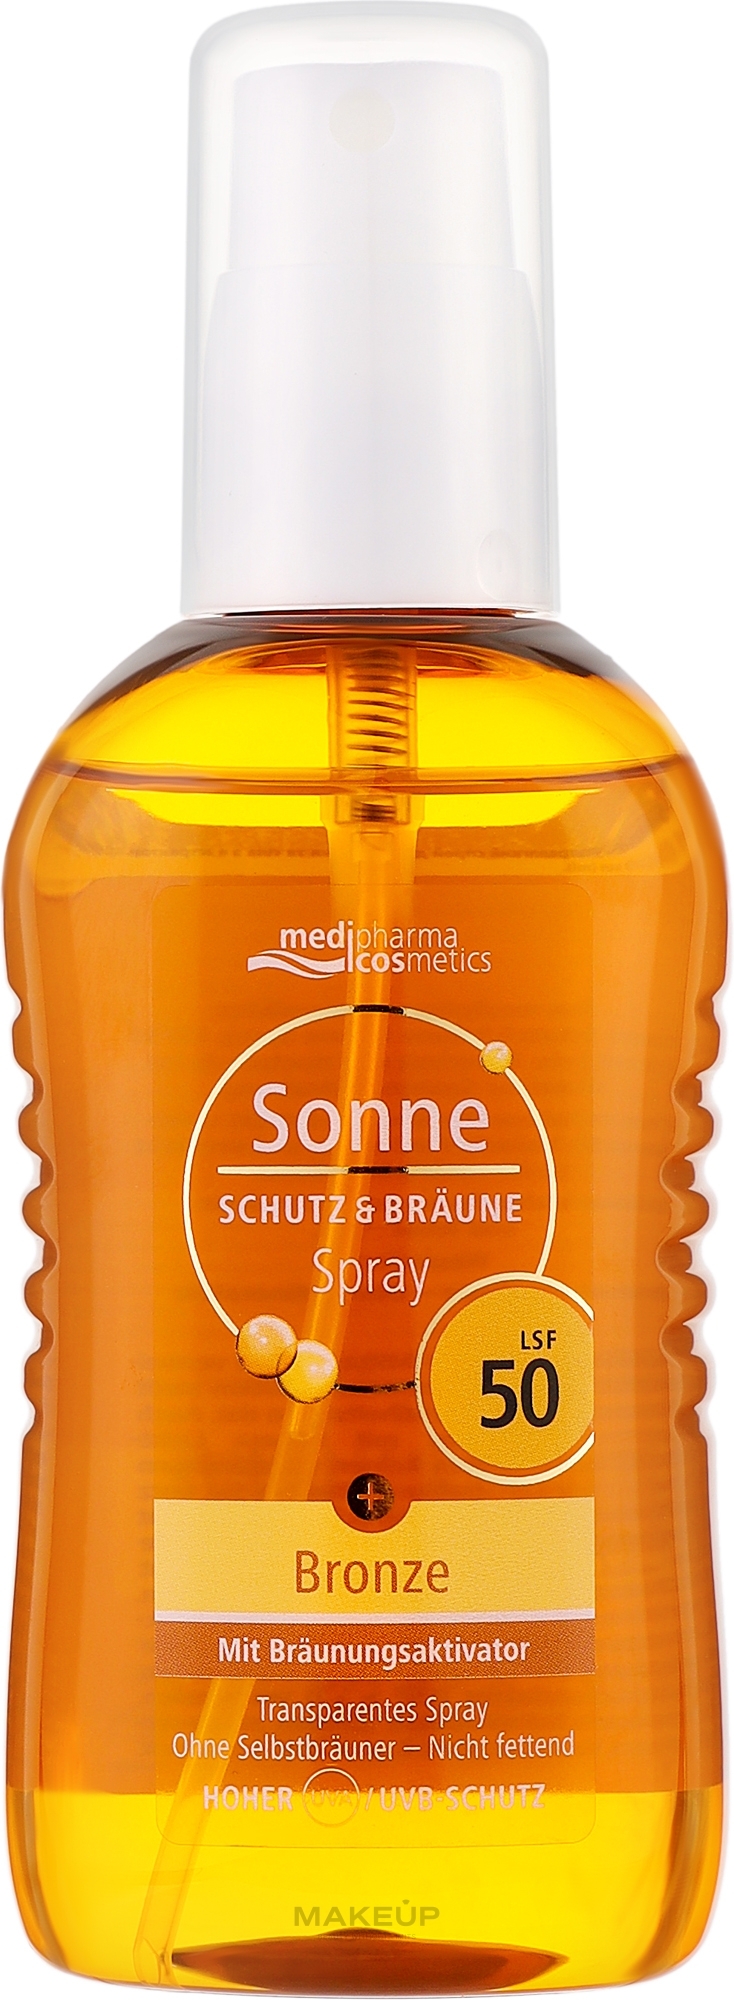 Сонцезахисний спрей для обличчя й тіла з екстрактом промеланіну - Medipharma Cosmetics Sonne SPF 50 — фото 200ml